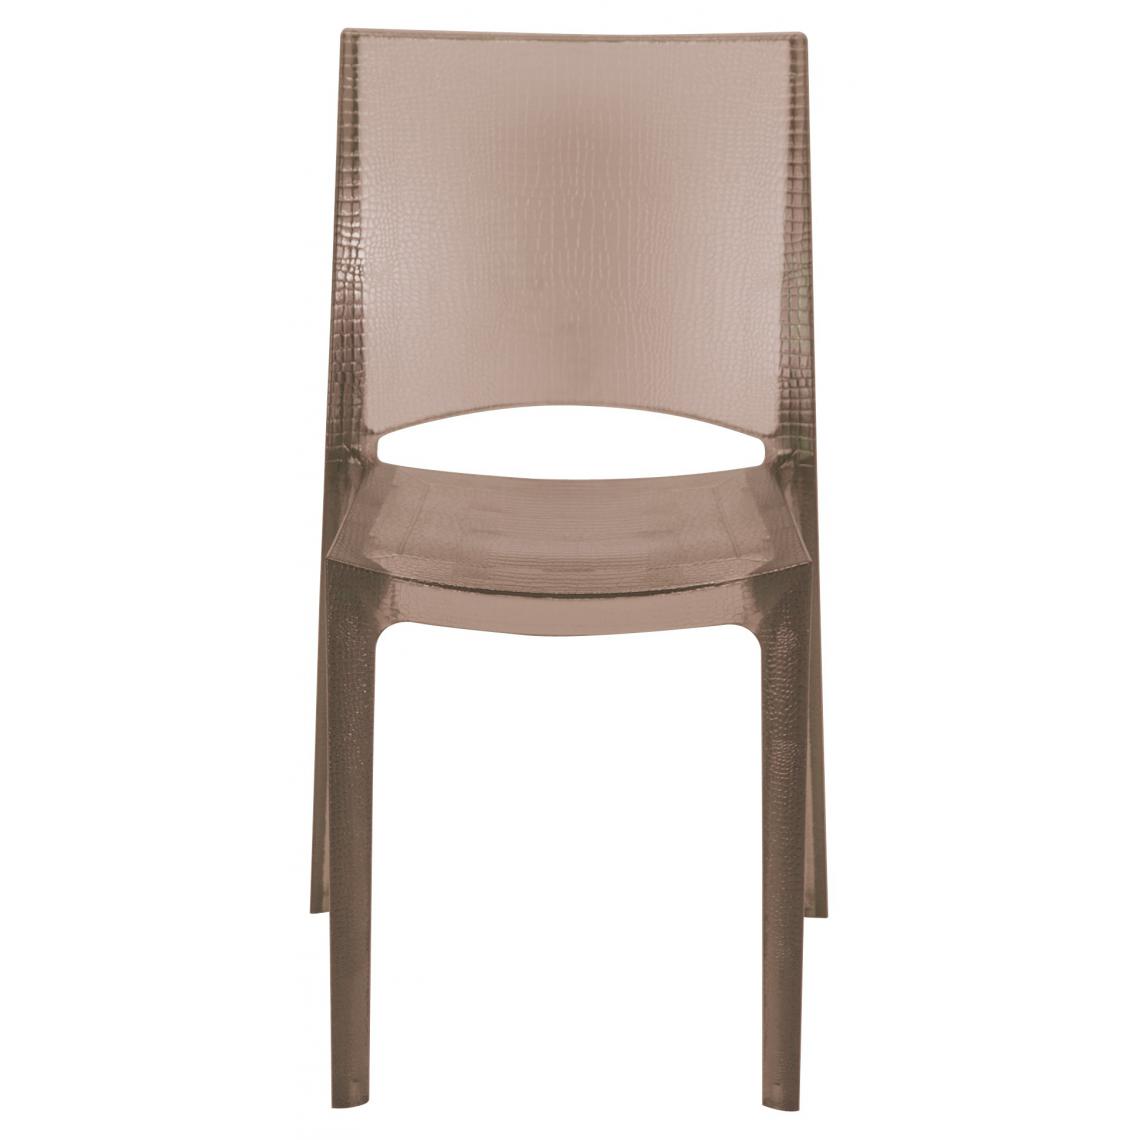 3S. x Home - Chaise Design Effet Croco Marron Fumée Transparente NILO - Chaises